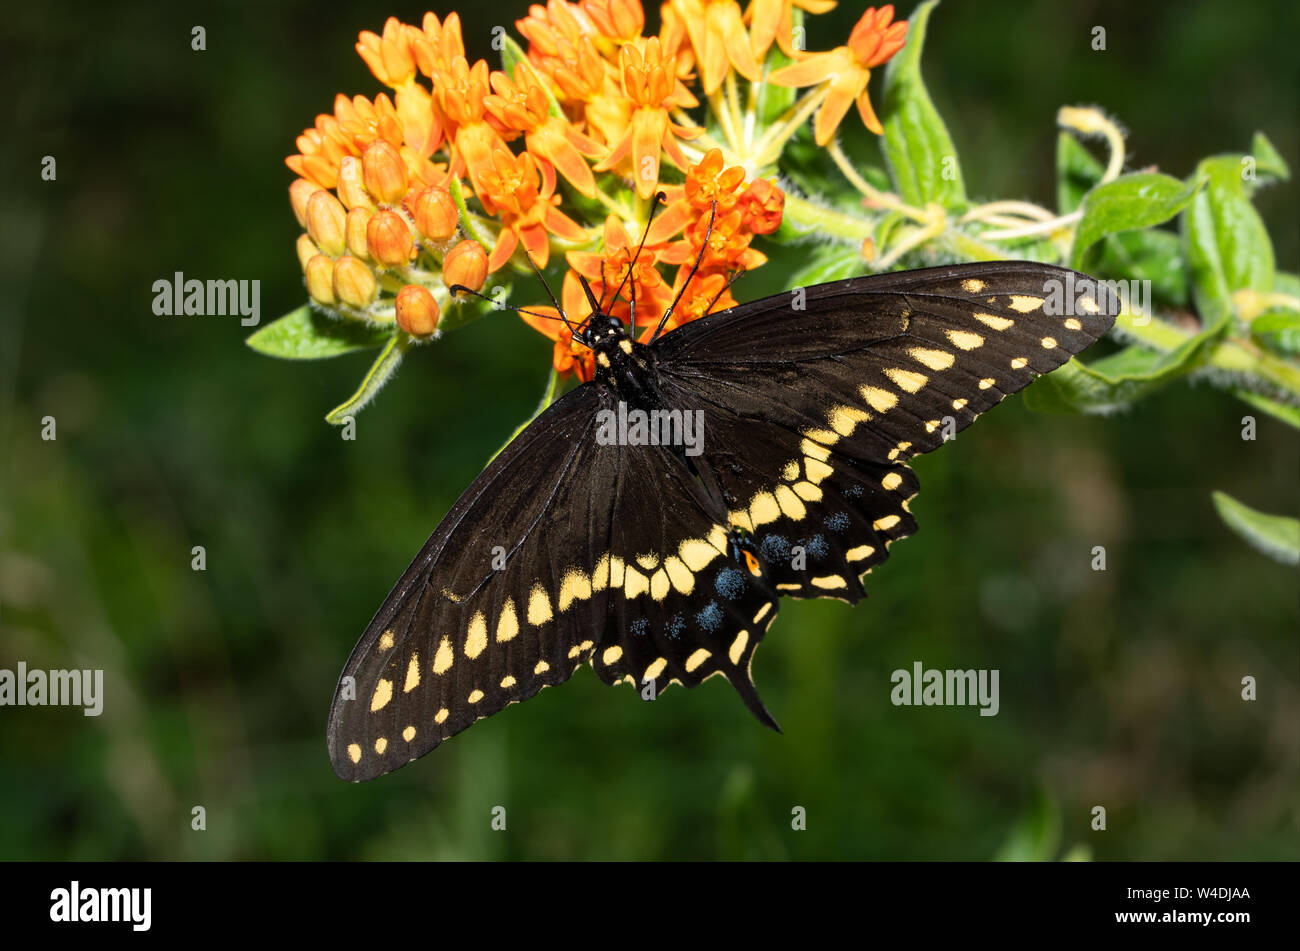 Male Eastern Black Swallowtail butterfly feeding on an orange Butterflyweed Stock Photo